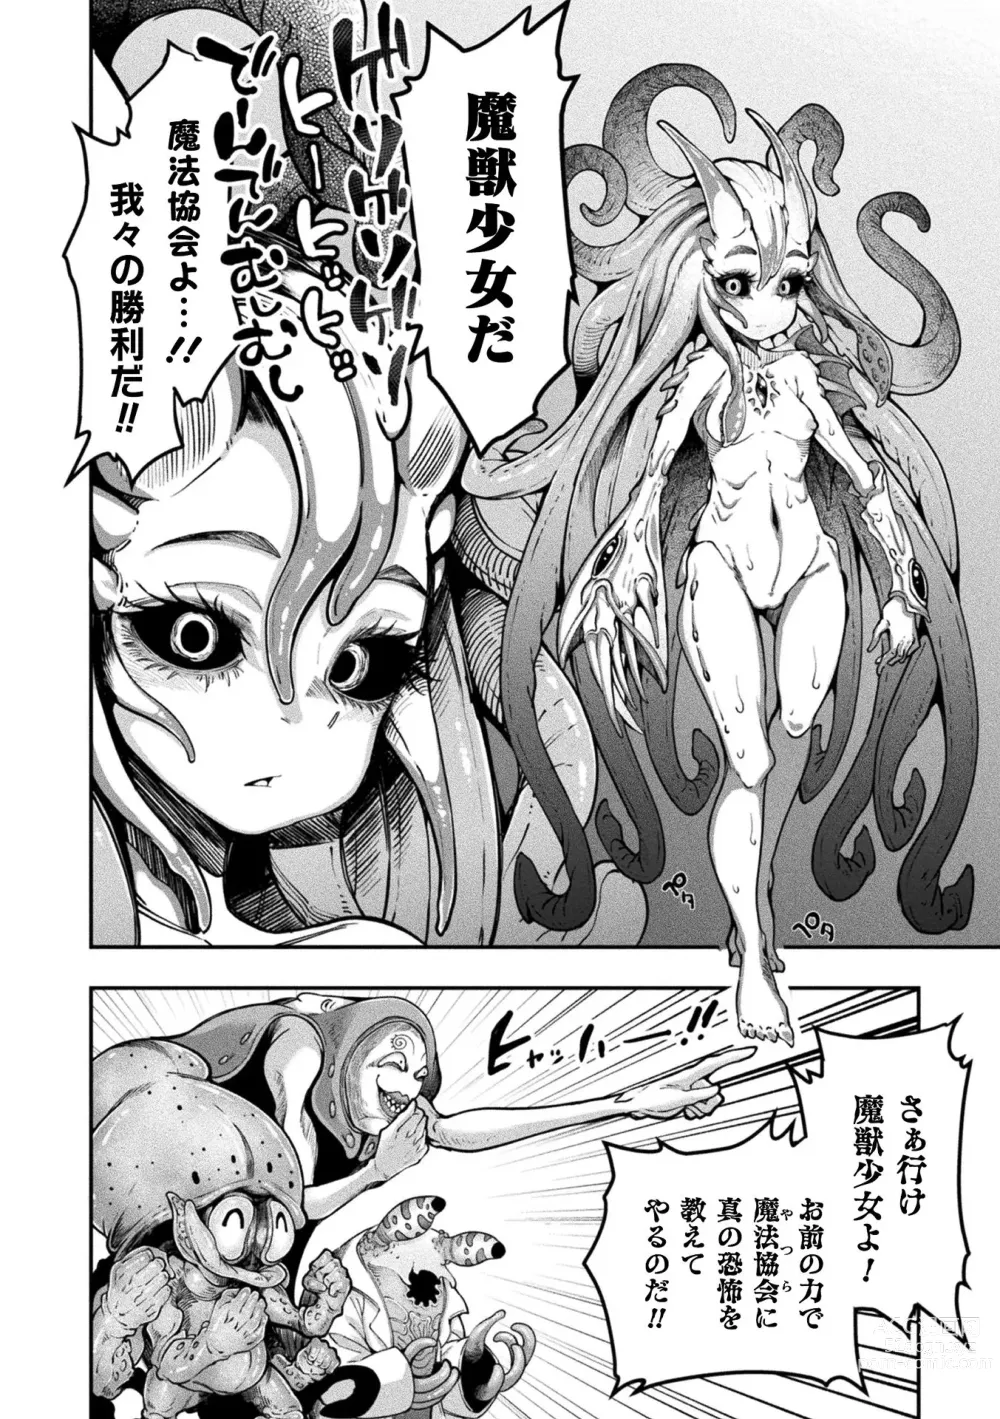 Page 210 of manga Kyou wa Seigi ga... ~Kaimetsu Seshi Mahou Shoujo-tachi~